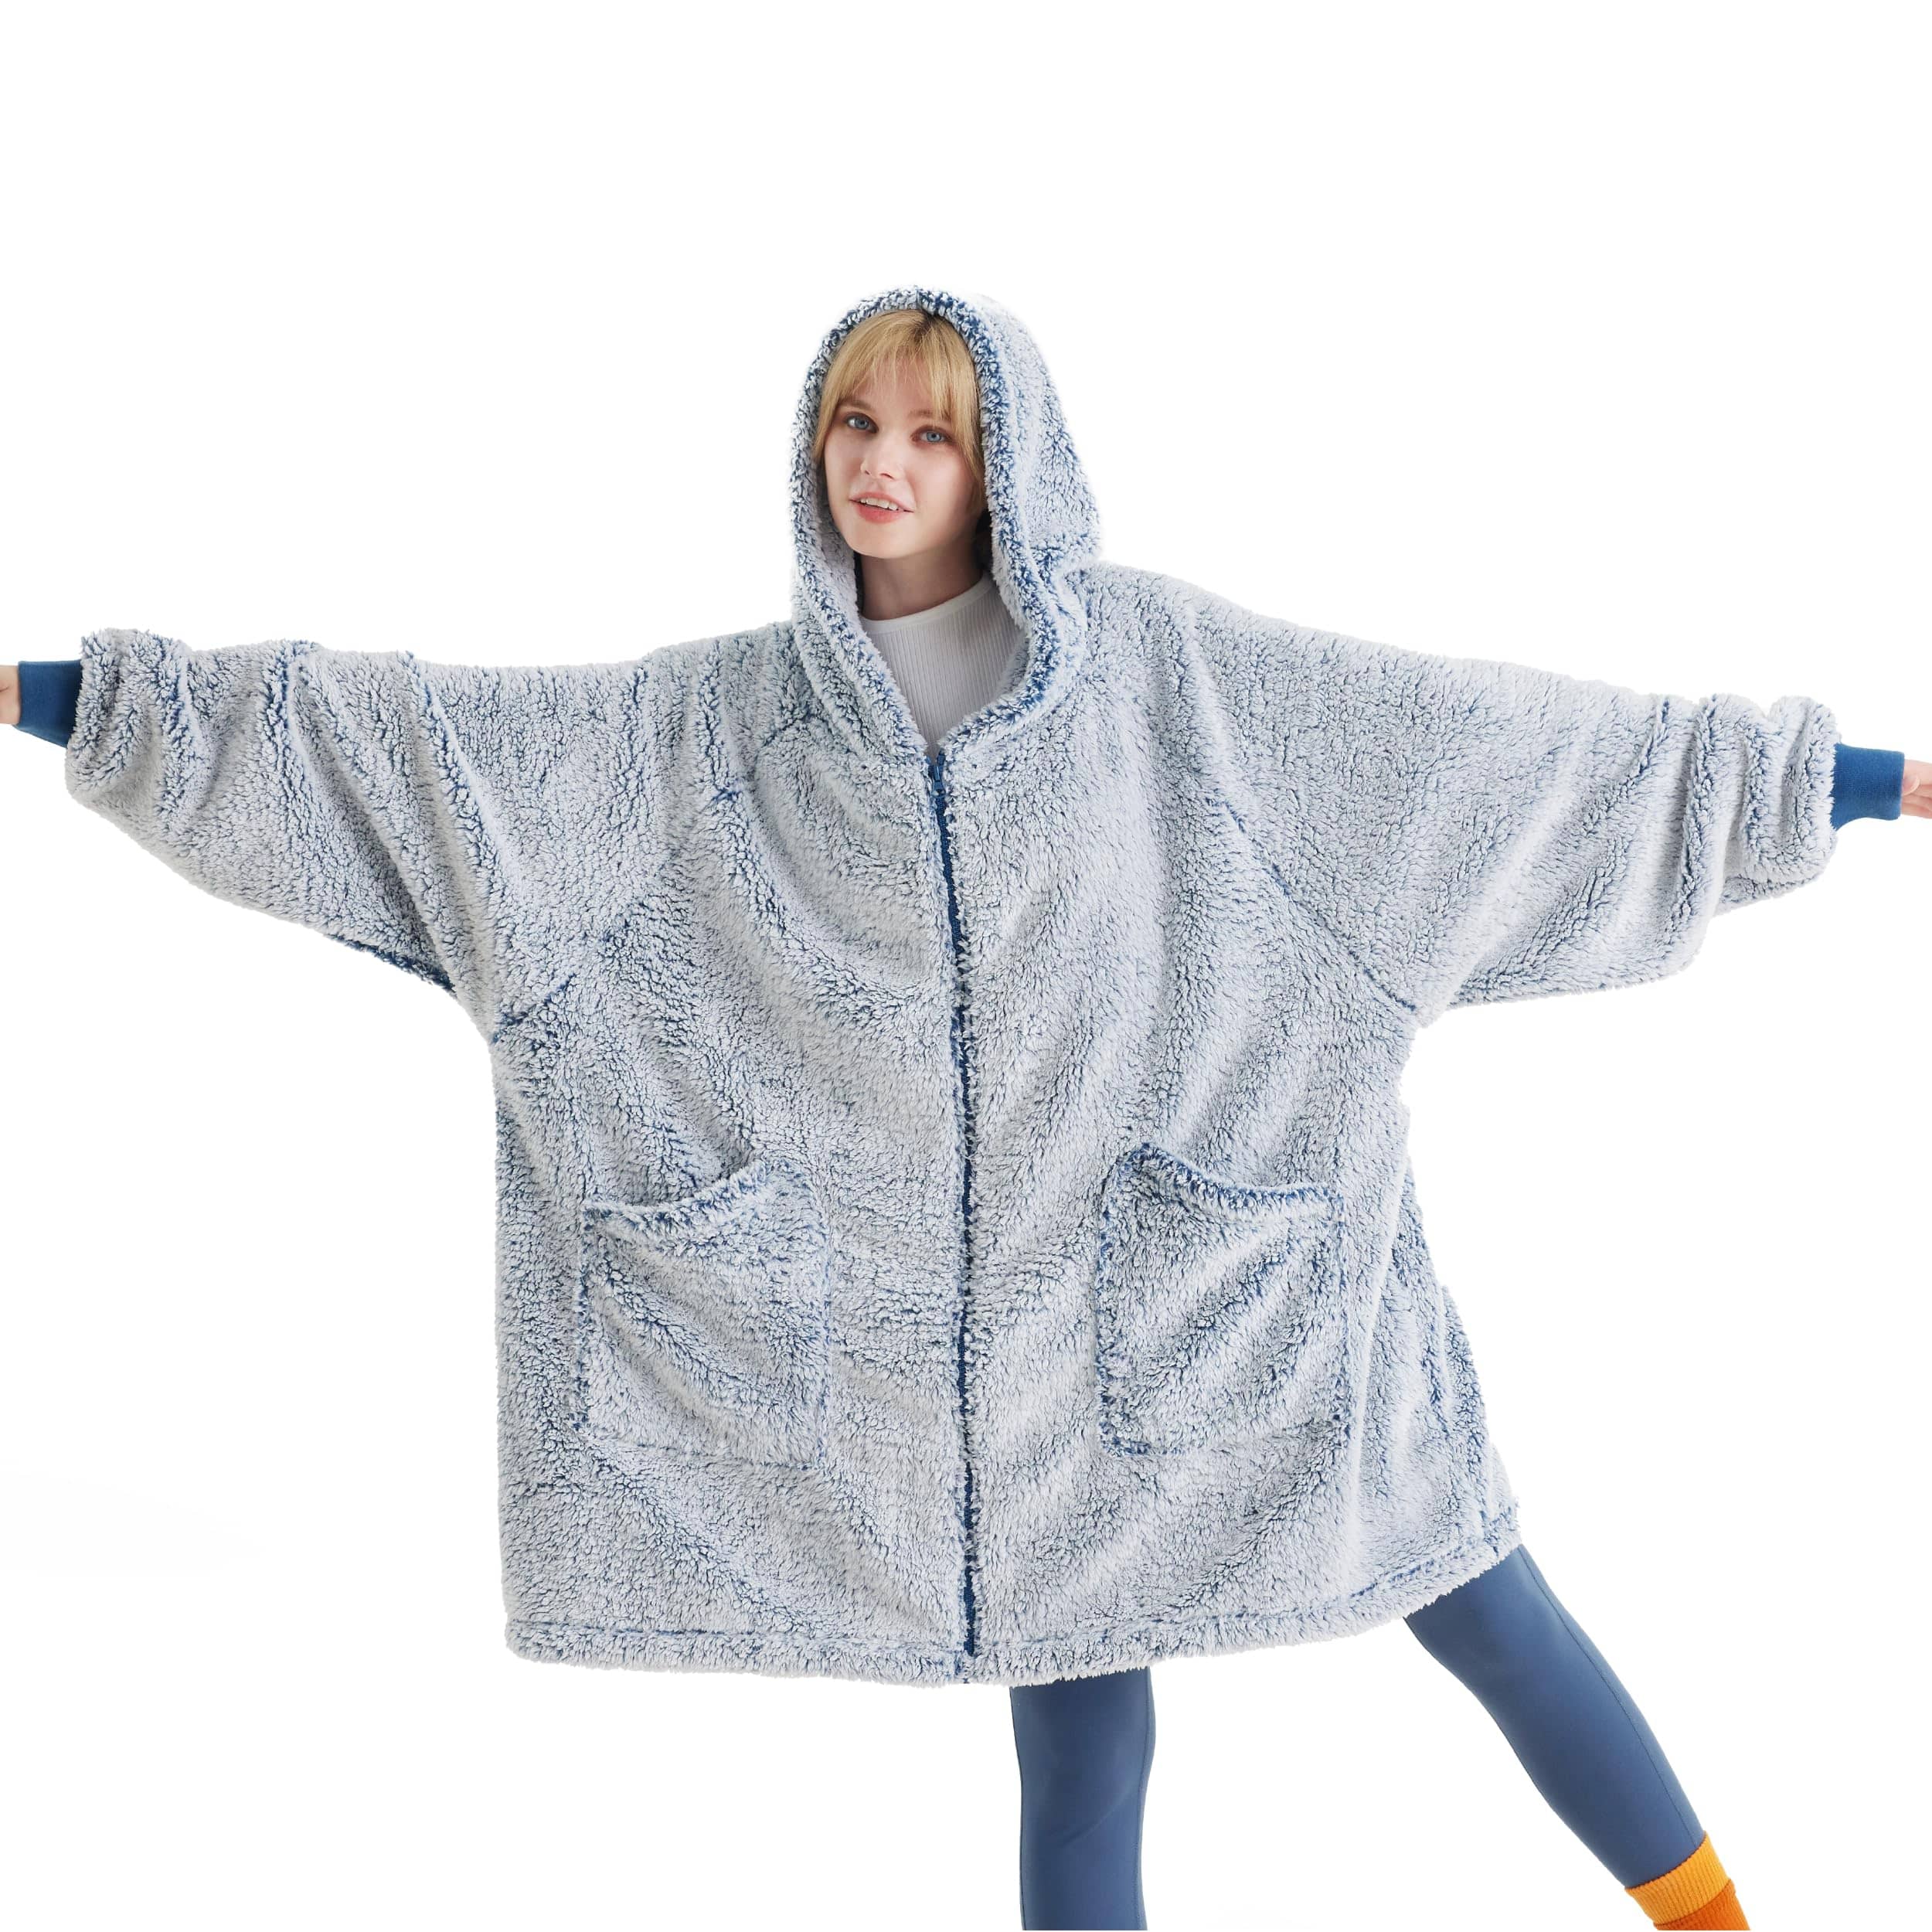 Wholesale Blanket Sweatshirt Hoodie Blanket, Wearable Blanket